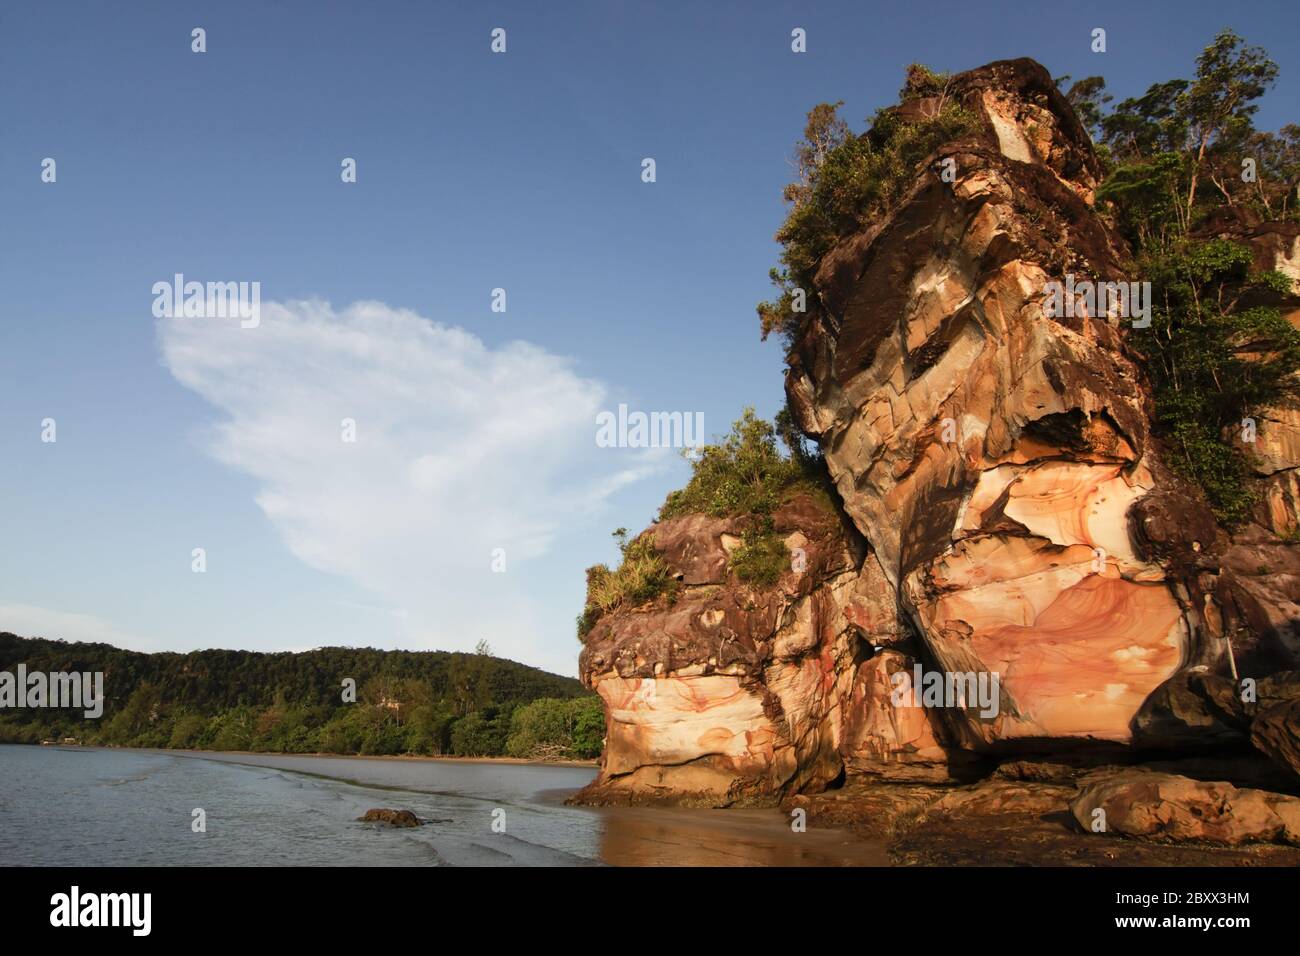 Rock Formation-Felsformation - Bako NP - Borneo-Malaysia Stock Photo